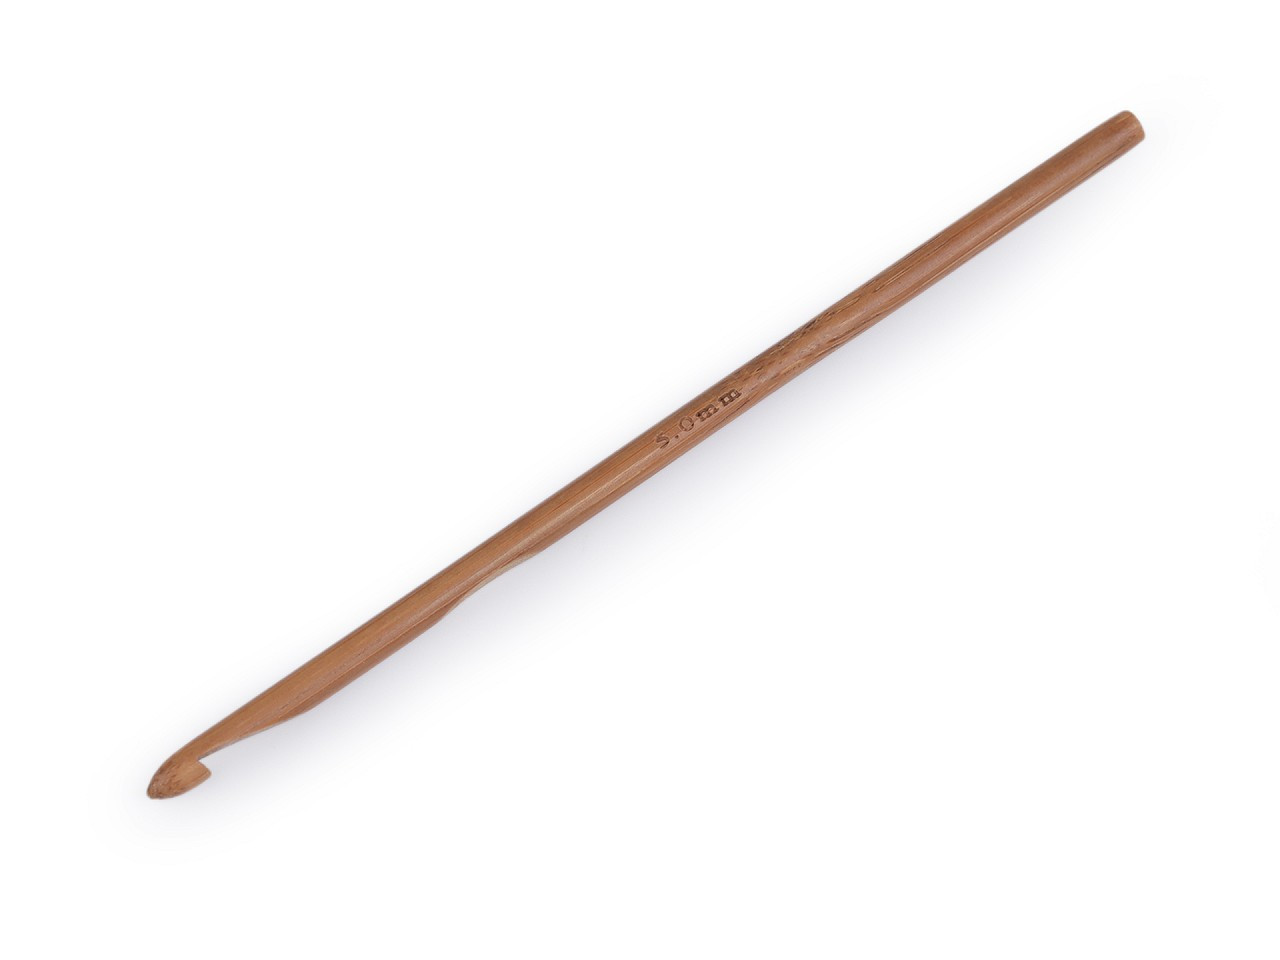 Bambusový háček na háčkování vel. 3; 4; 4,5; 5; 5,5, barva 6 (5 mm) bambus tmavý